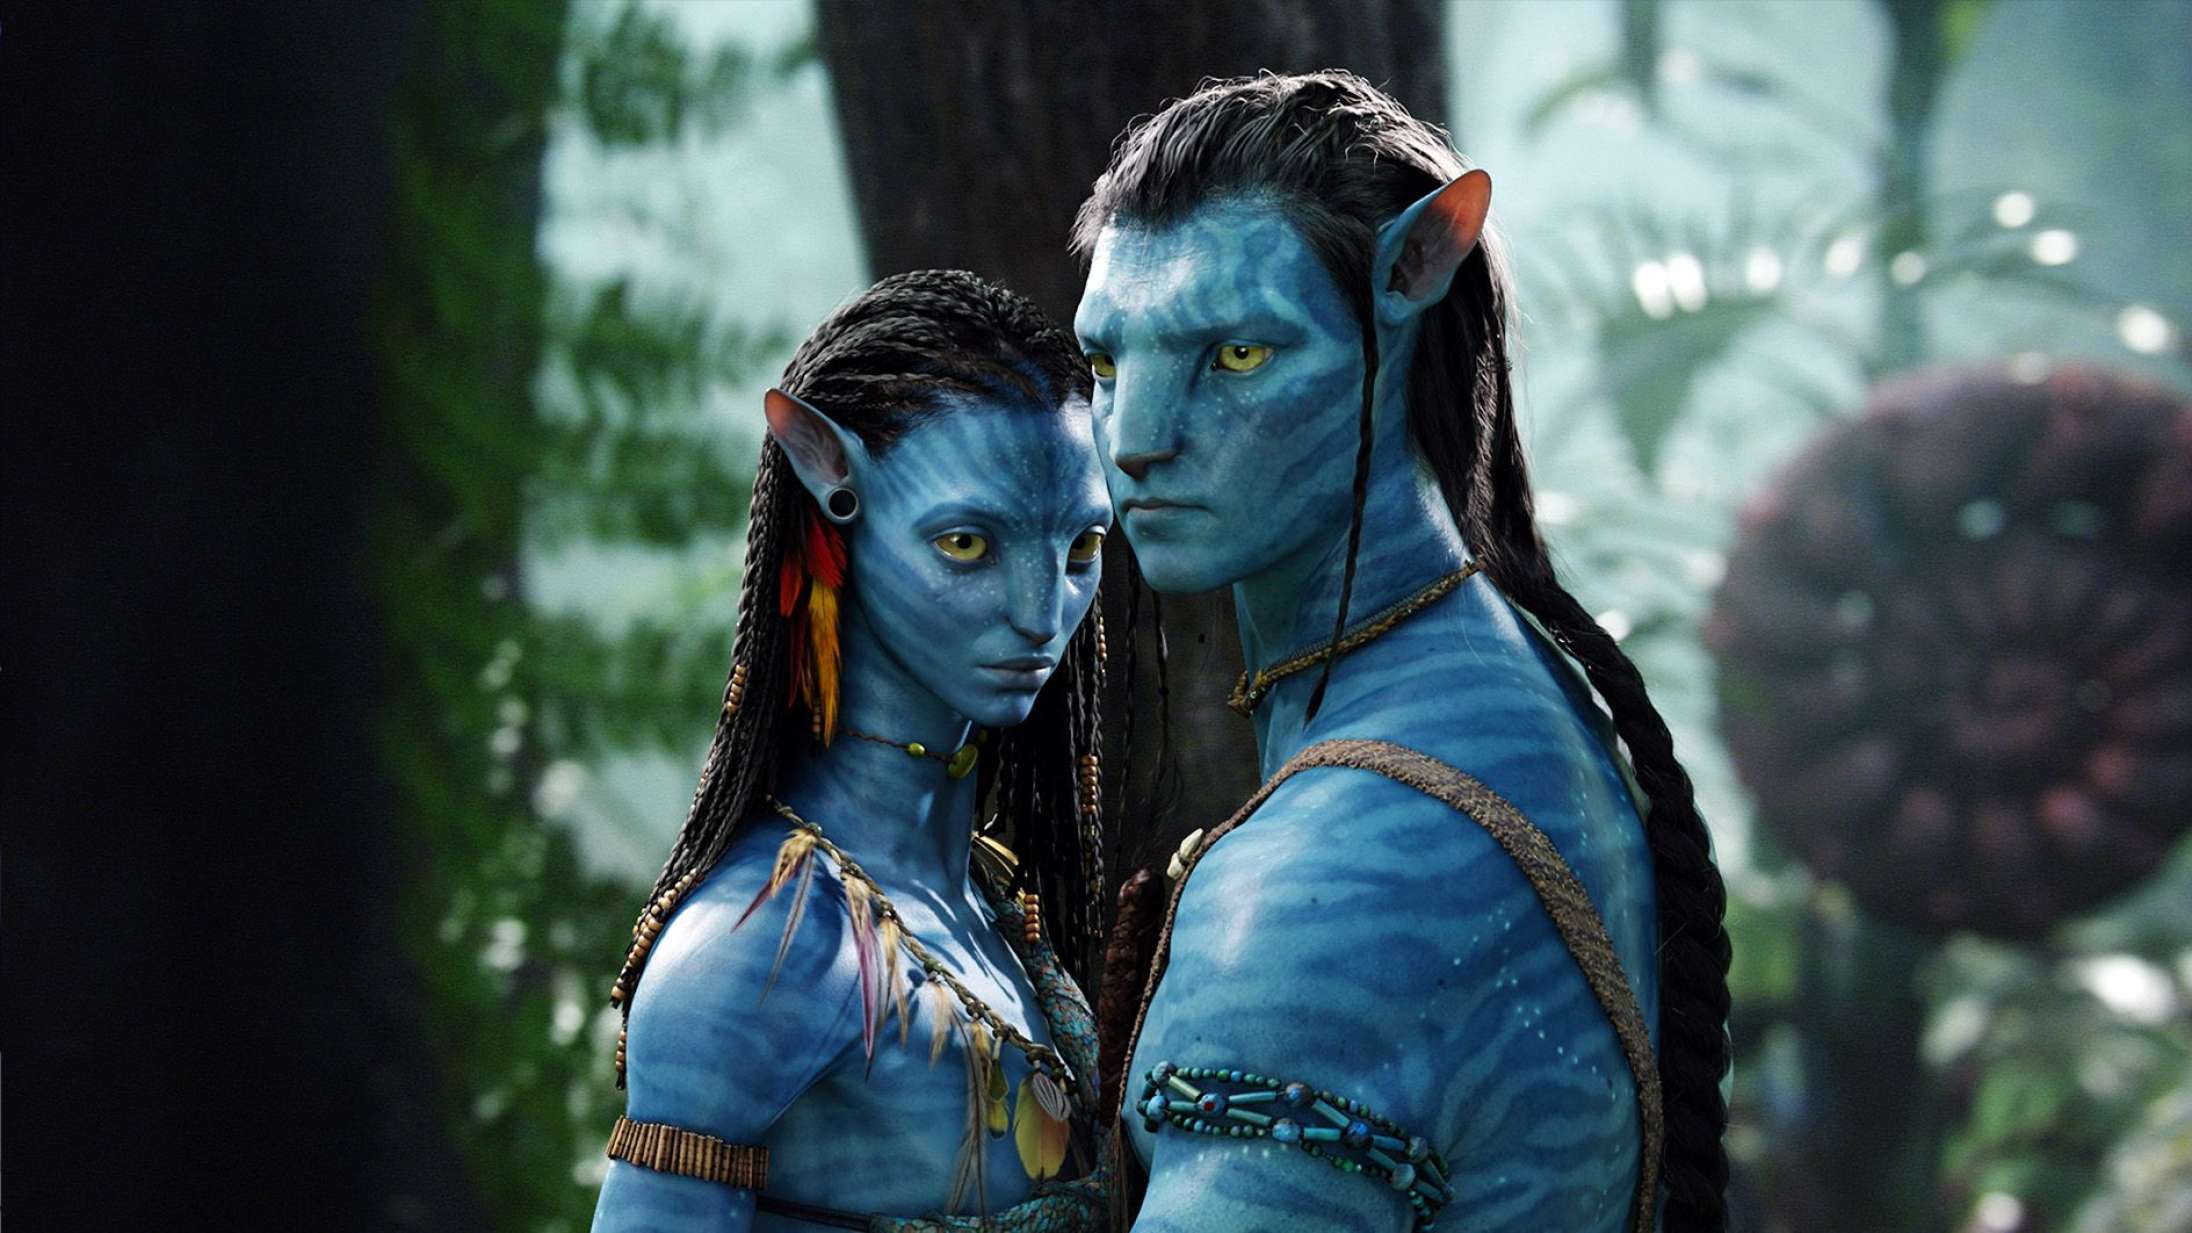 James Cameron vender tilbage til Pandora i første officielle trailer til ‘Avatar: The Way of Water’